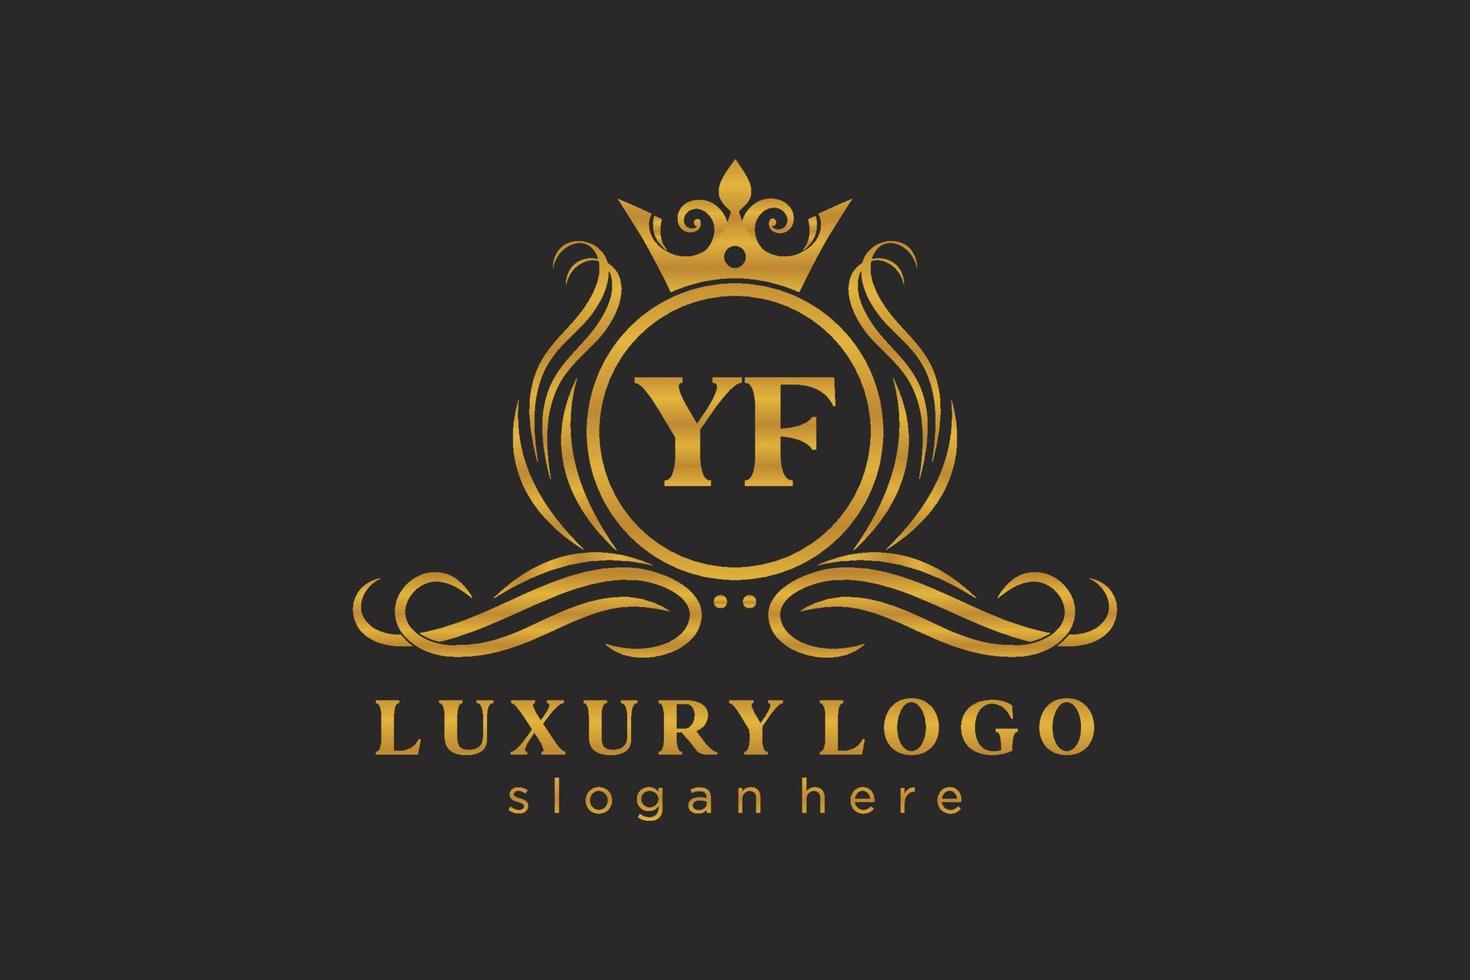 anfängliche yf-Buchstabe königliche Luxus-Logo-Vorlage in Vektorgrafiken für Restaurant, Lizenzgebühren, Boutique, Café, Hotel, heraldisch, Schmuck, Mode und andere Vektorillustrationen. vektor